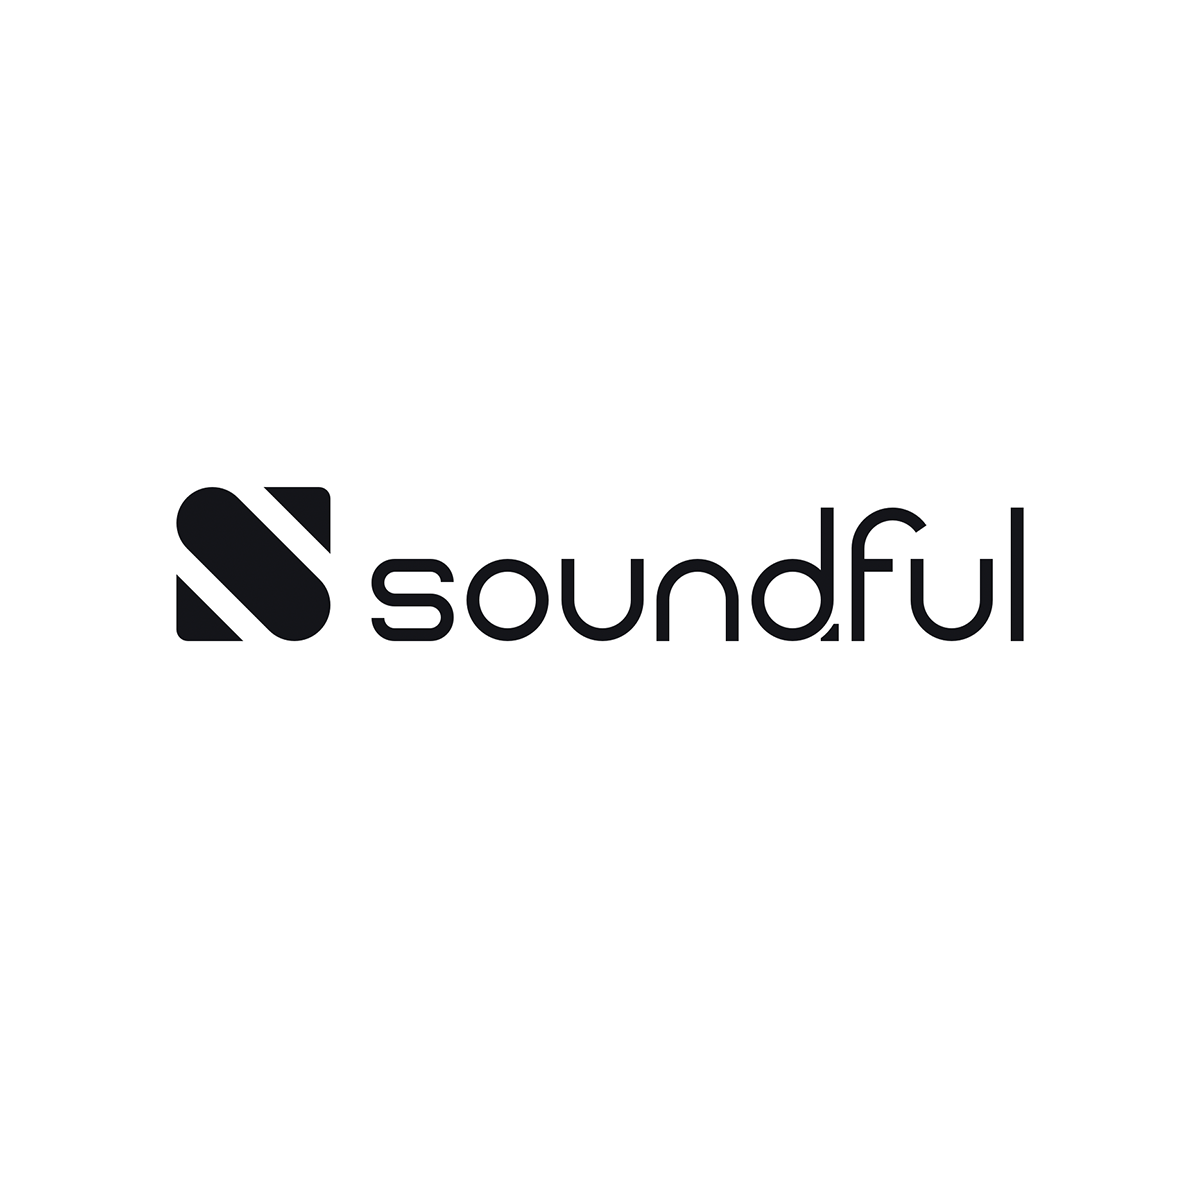 L'agenzia smartboost di United States ha aiutato Soundful a far crescere il suo business con la SEO e il digital marketing